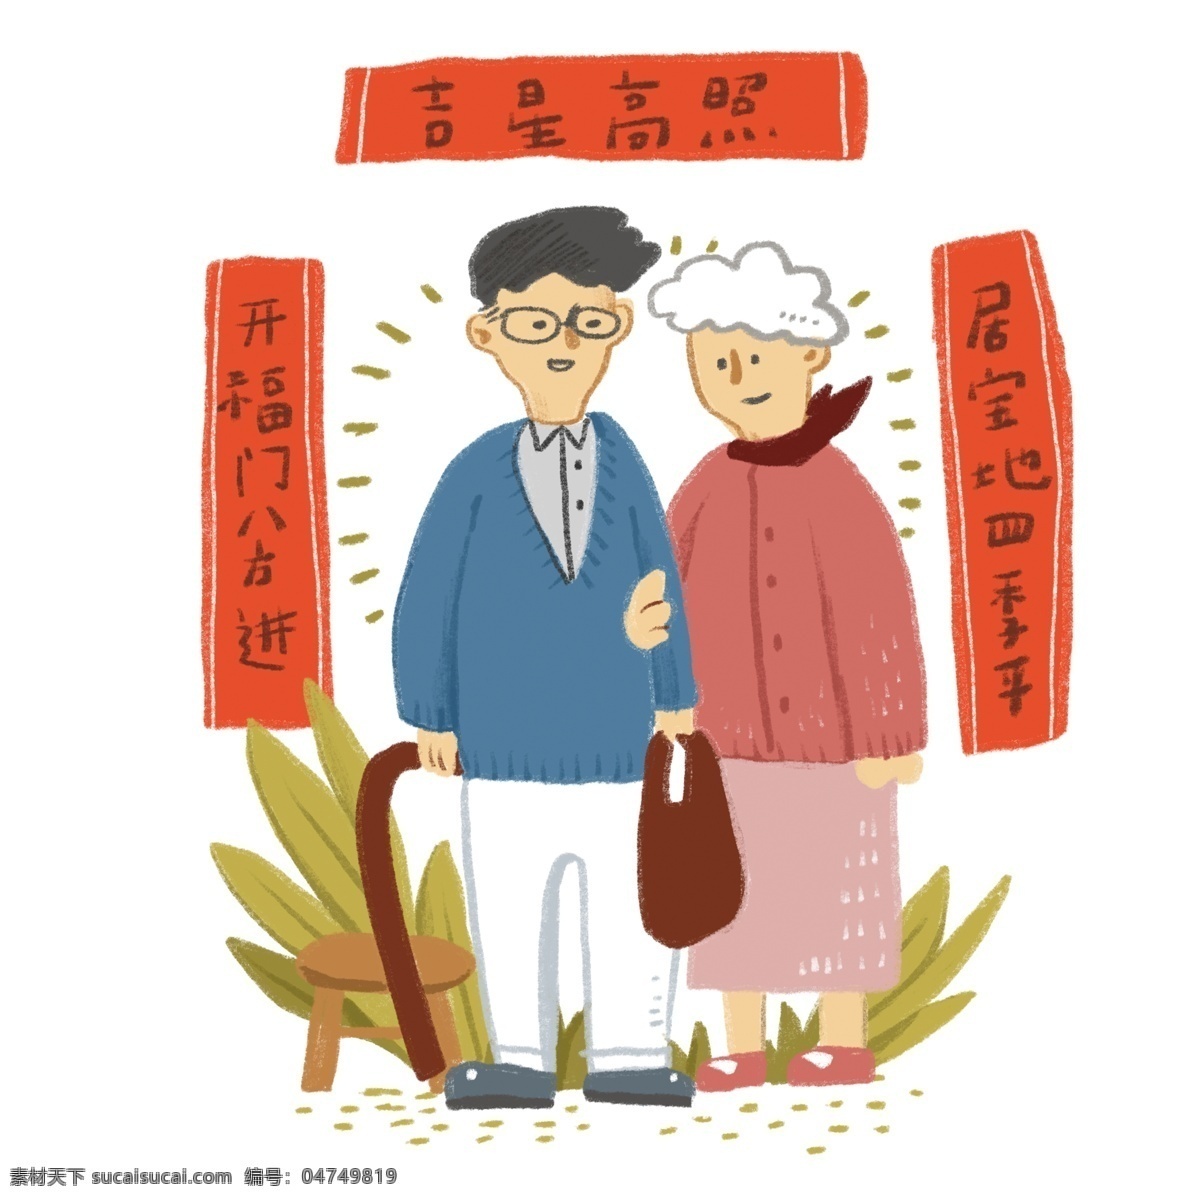 爷爷 奶奶 贴 对联 新年 过年 习俗 商业 儿插 配图 传承 老人 年味 风土人情 红色 暖色